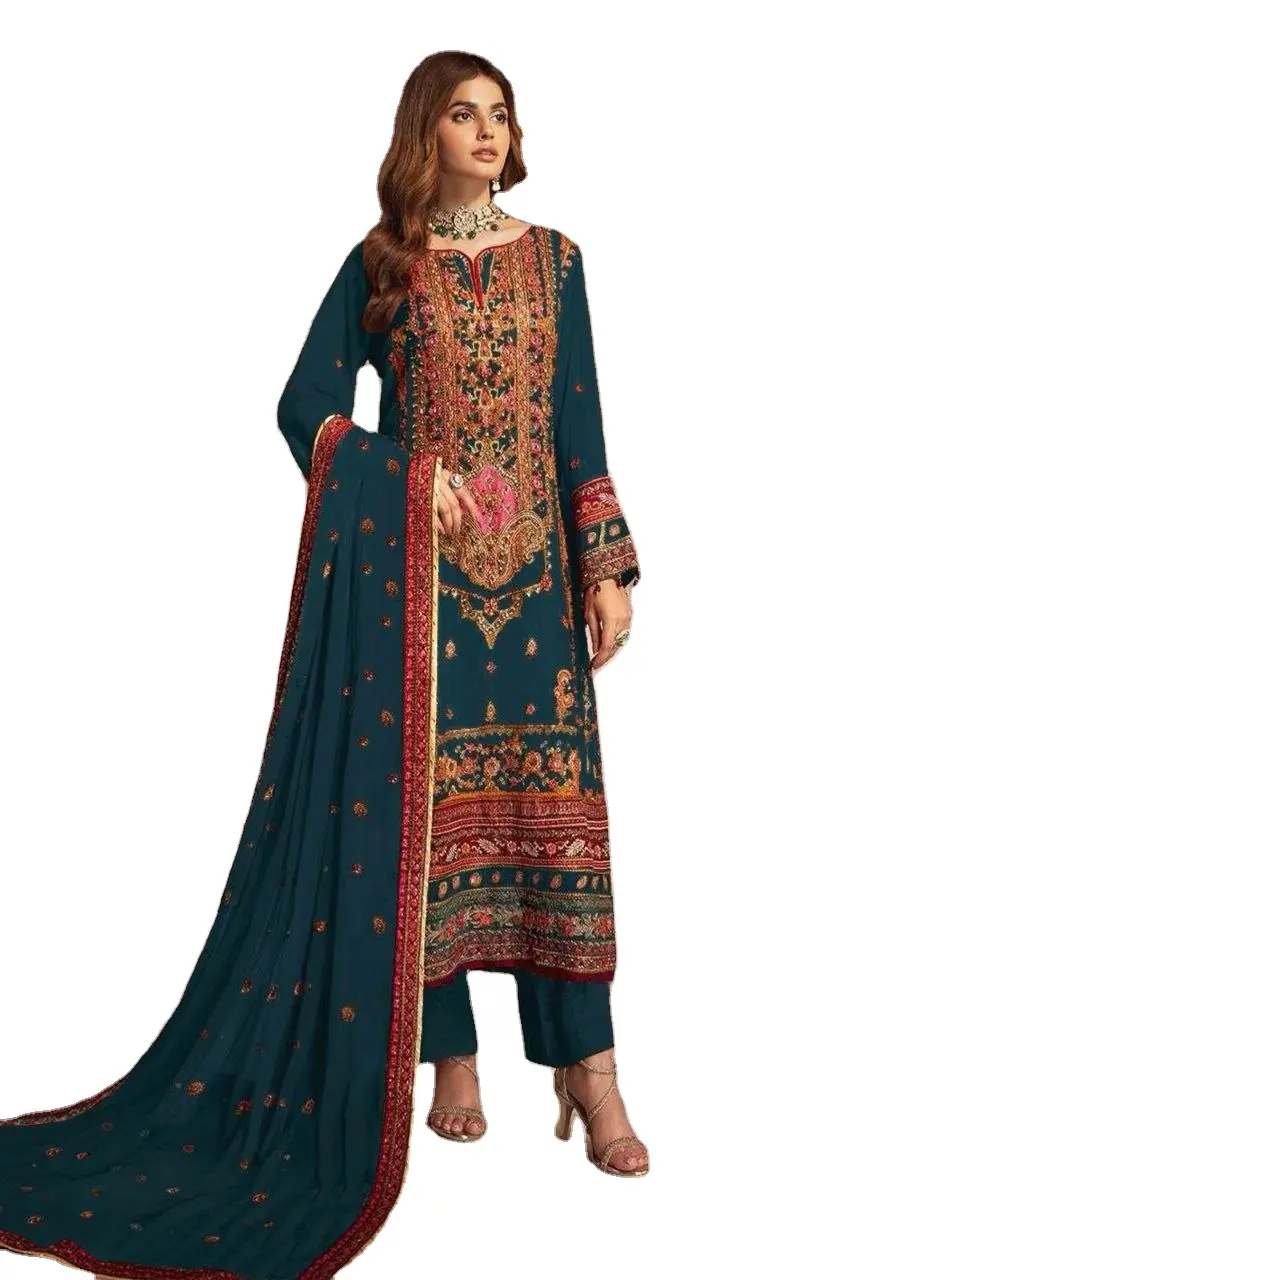 Vestido Kurti para festas e trabalho, mais recente e elegante vestido de grife indiano estilo paquistanês bordado